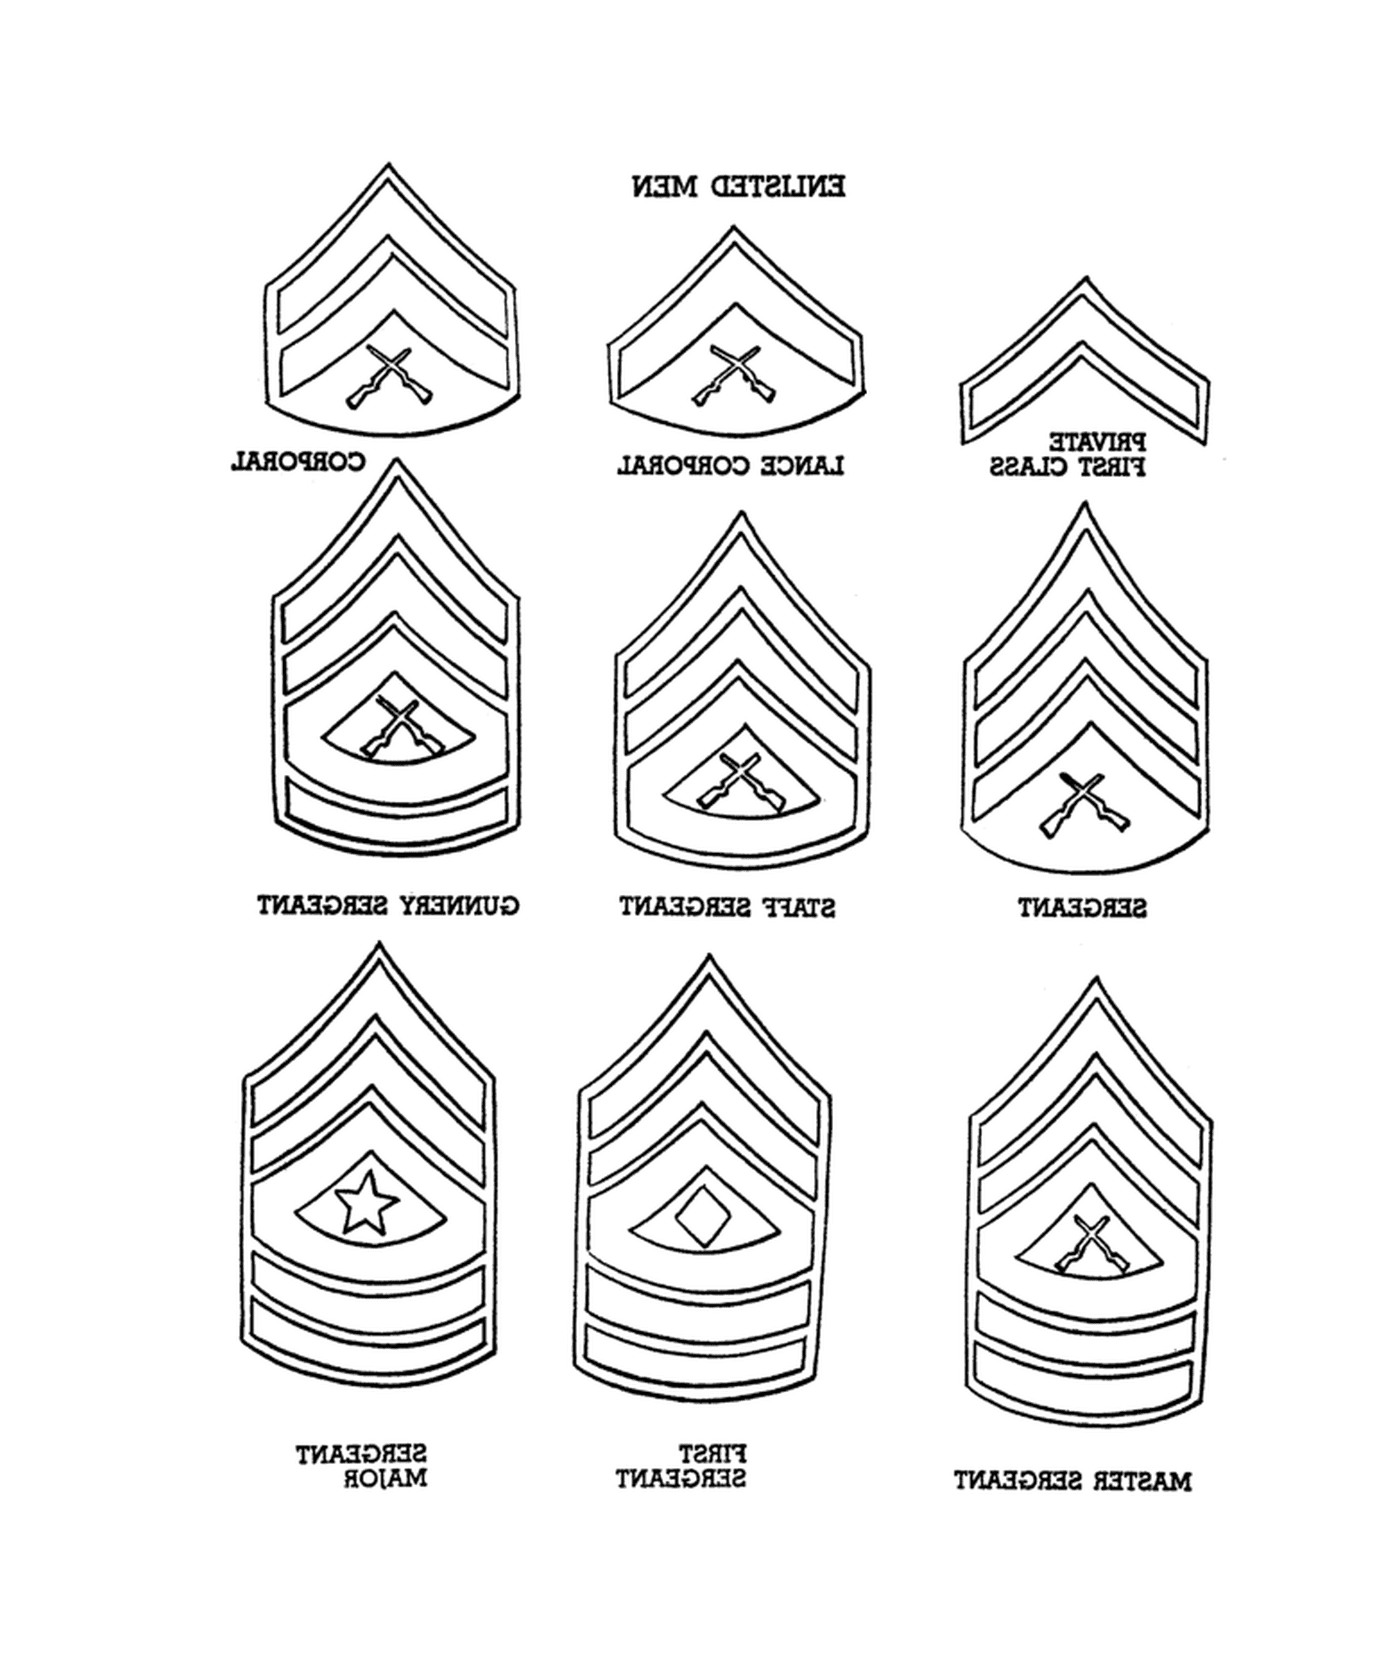  Rangliste des Marinekorps: eine Reihe von neun Insignien unterschiedlichen militärischen Ranges 